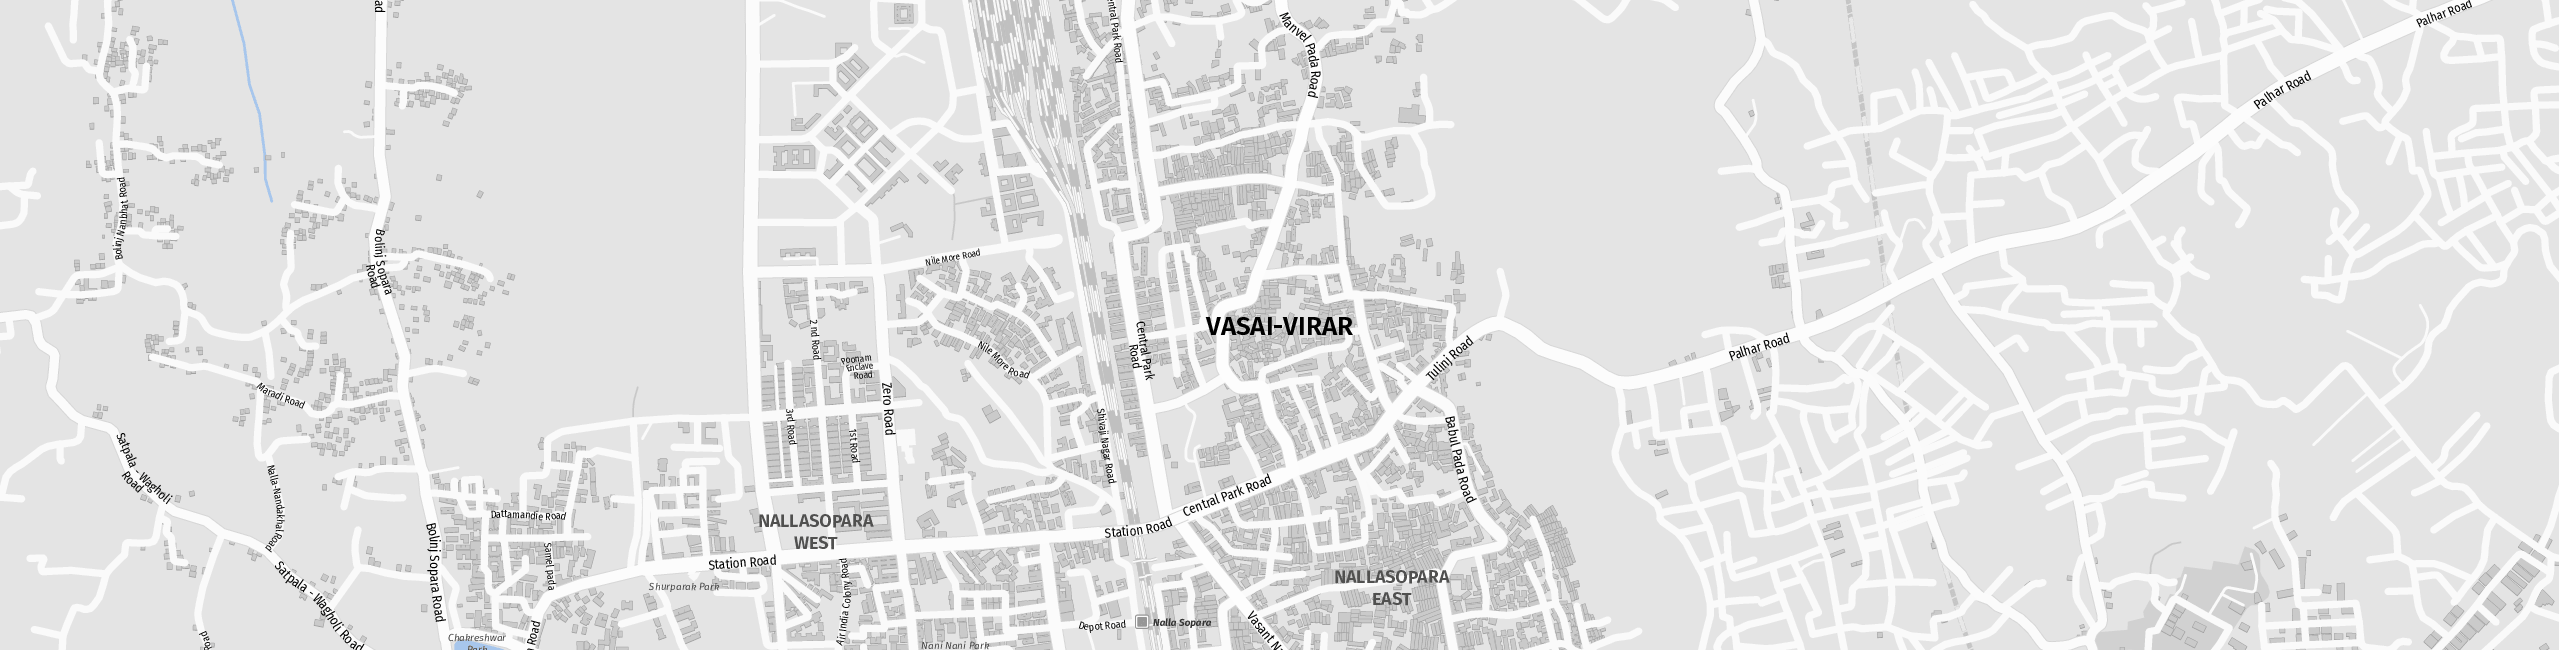 Stadtplan Vasai-Virar zum Downloaden.